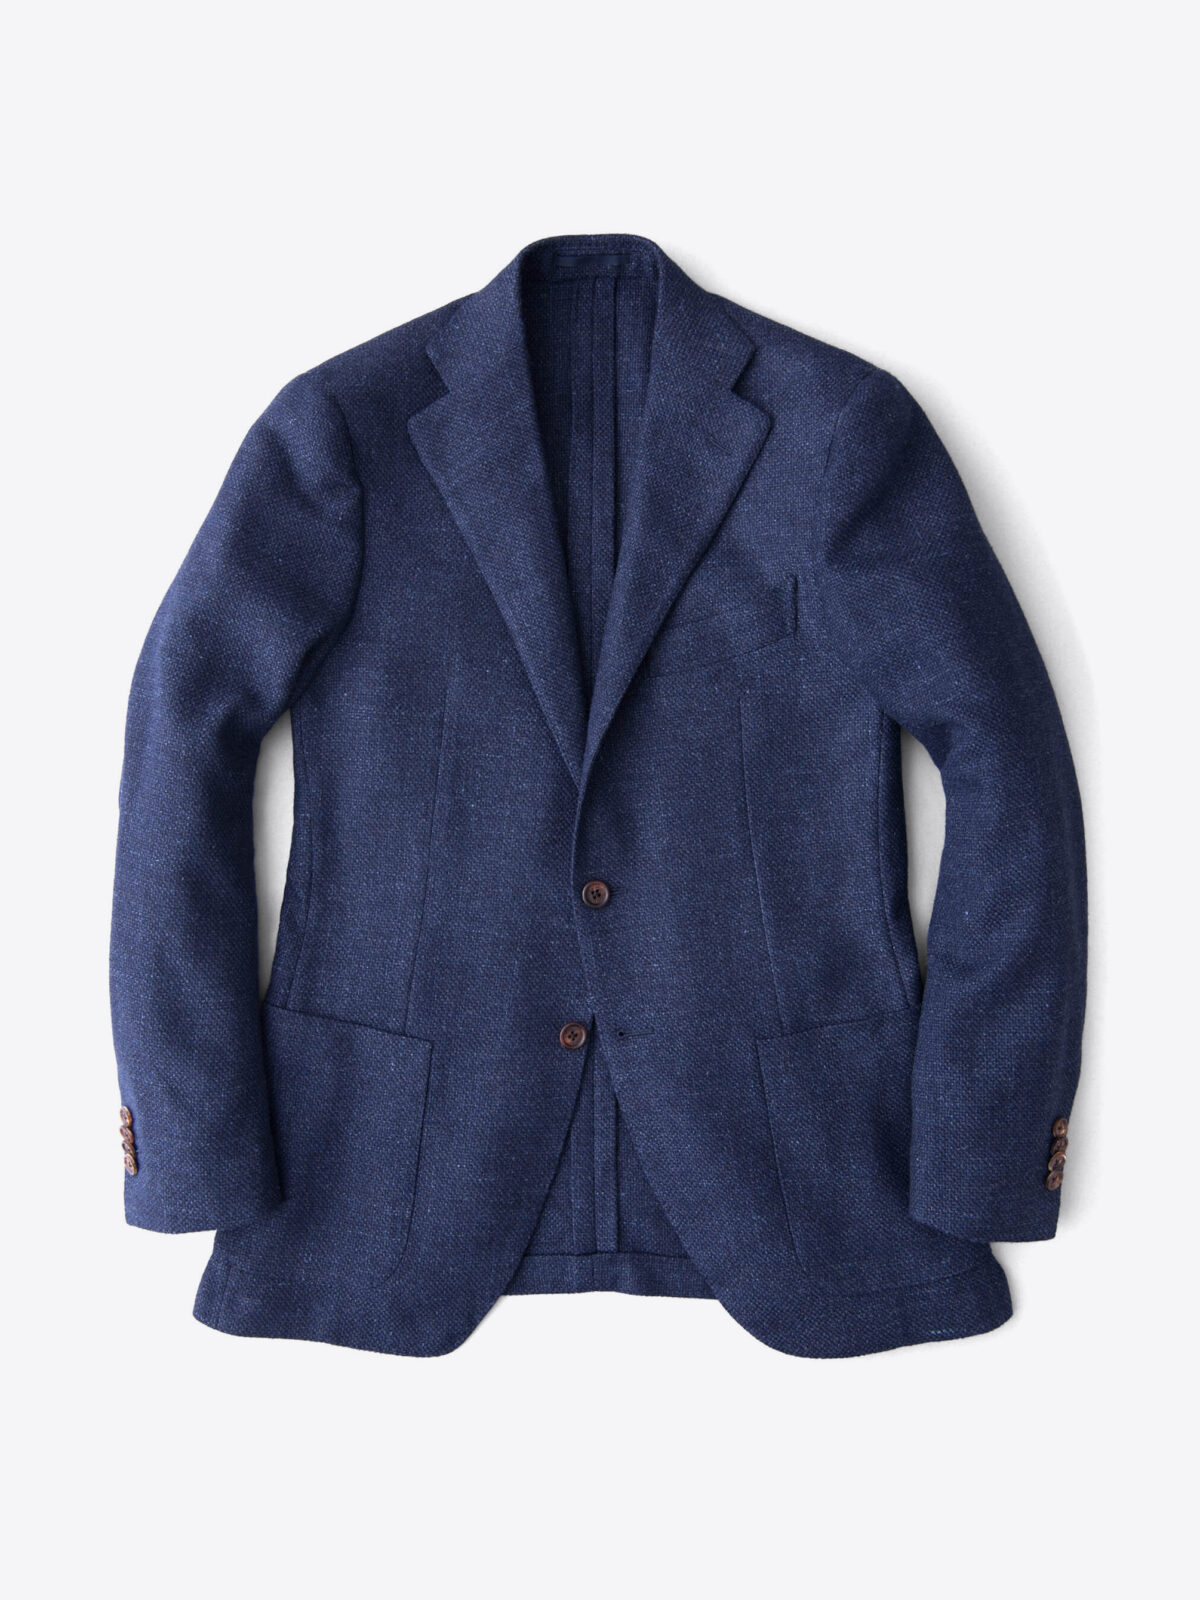 Hudson Navy Basketweave Wool Flannel Jacket